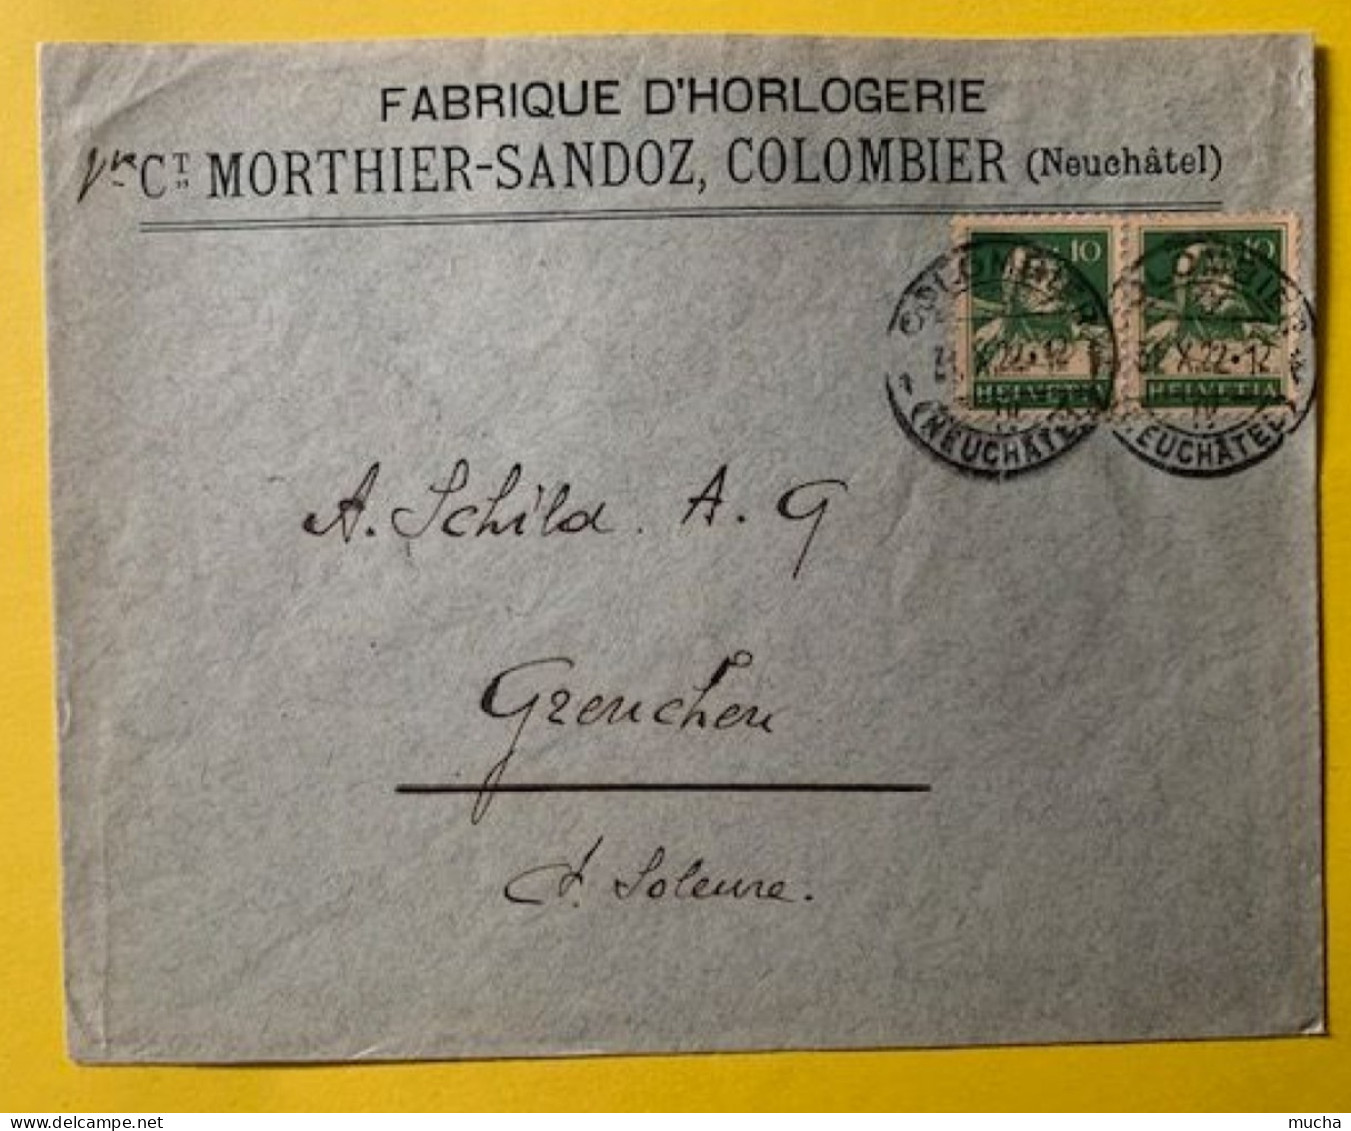 70030 - Suisse Lettre Fabrique D'Horlogerie Vve Morthier-Sandoz Colombier 31.10.1922 - Relojería